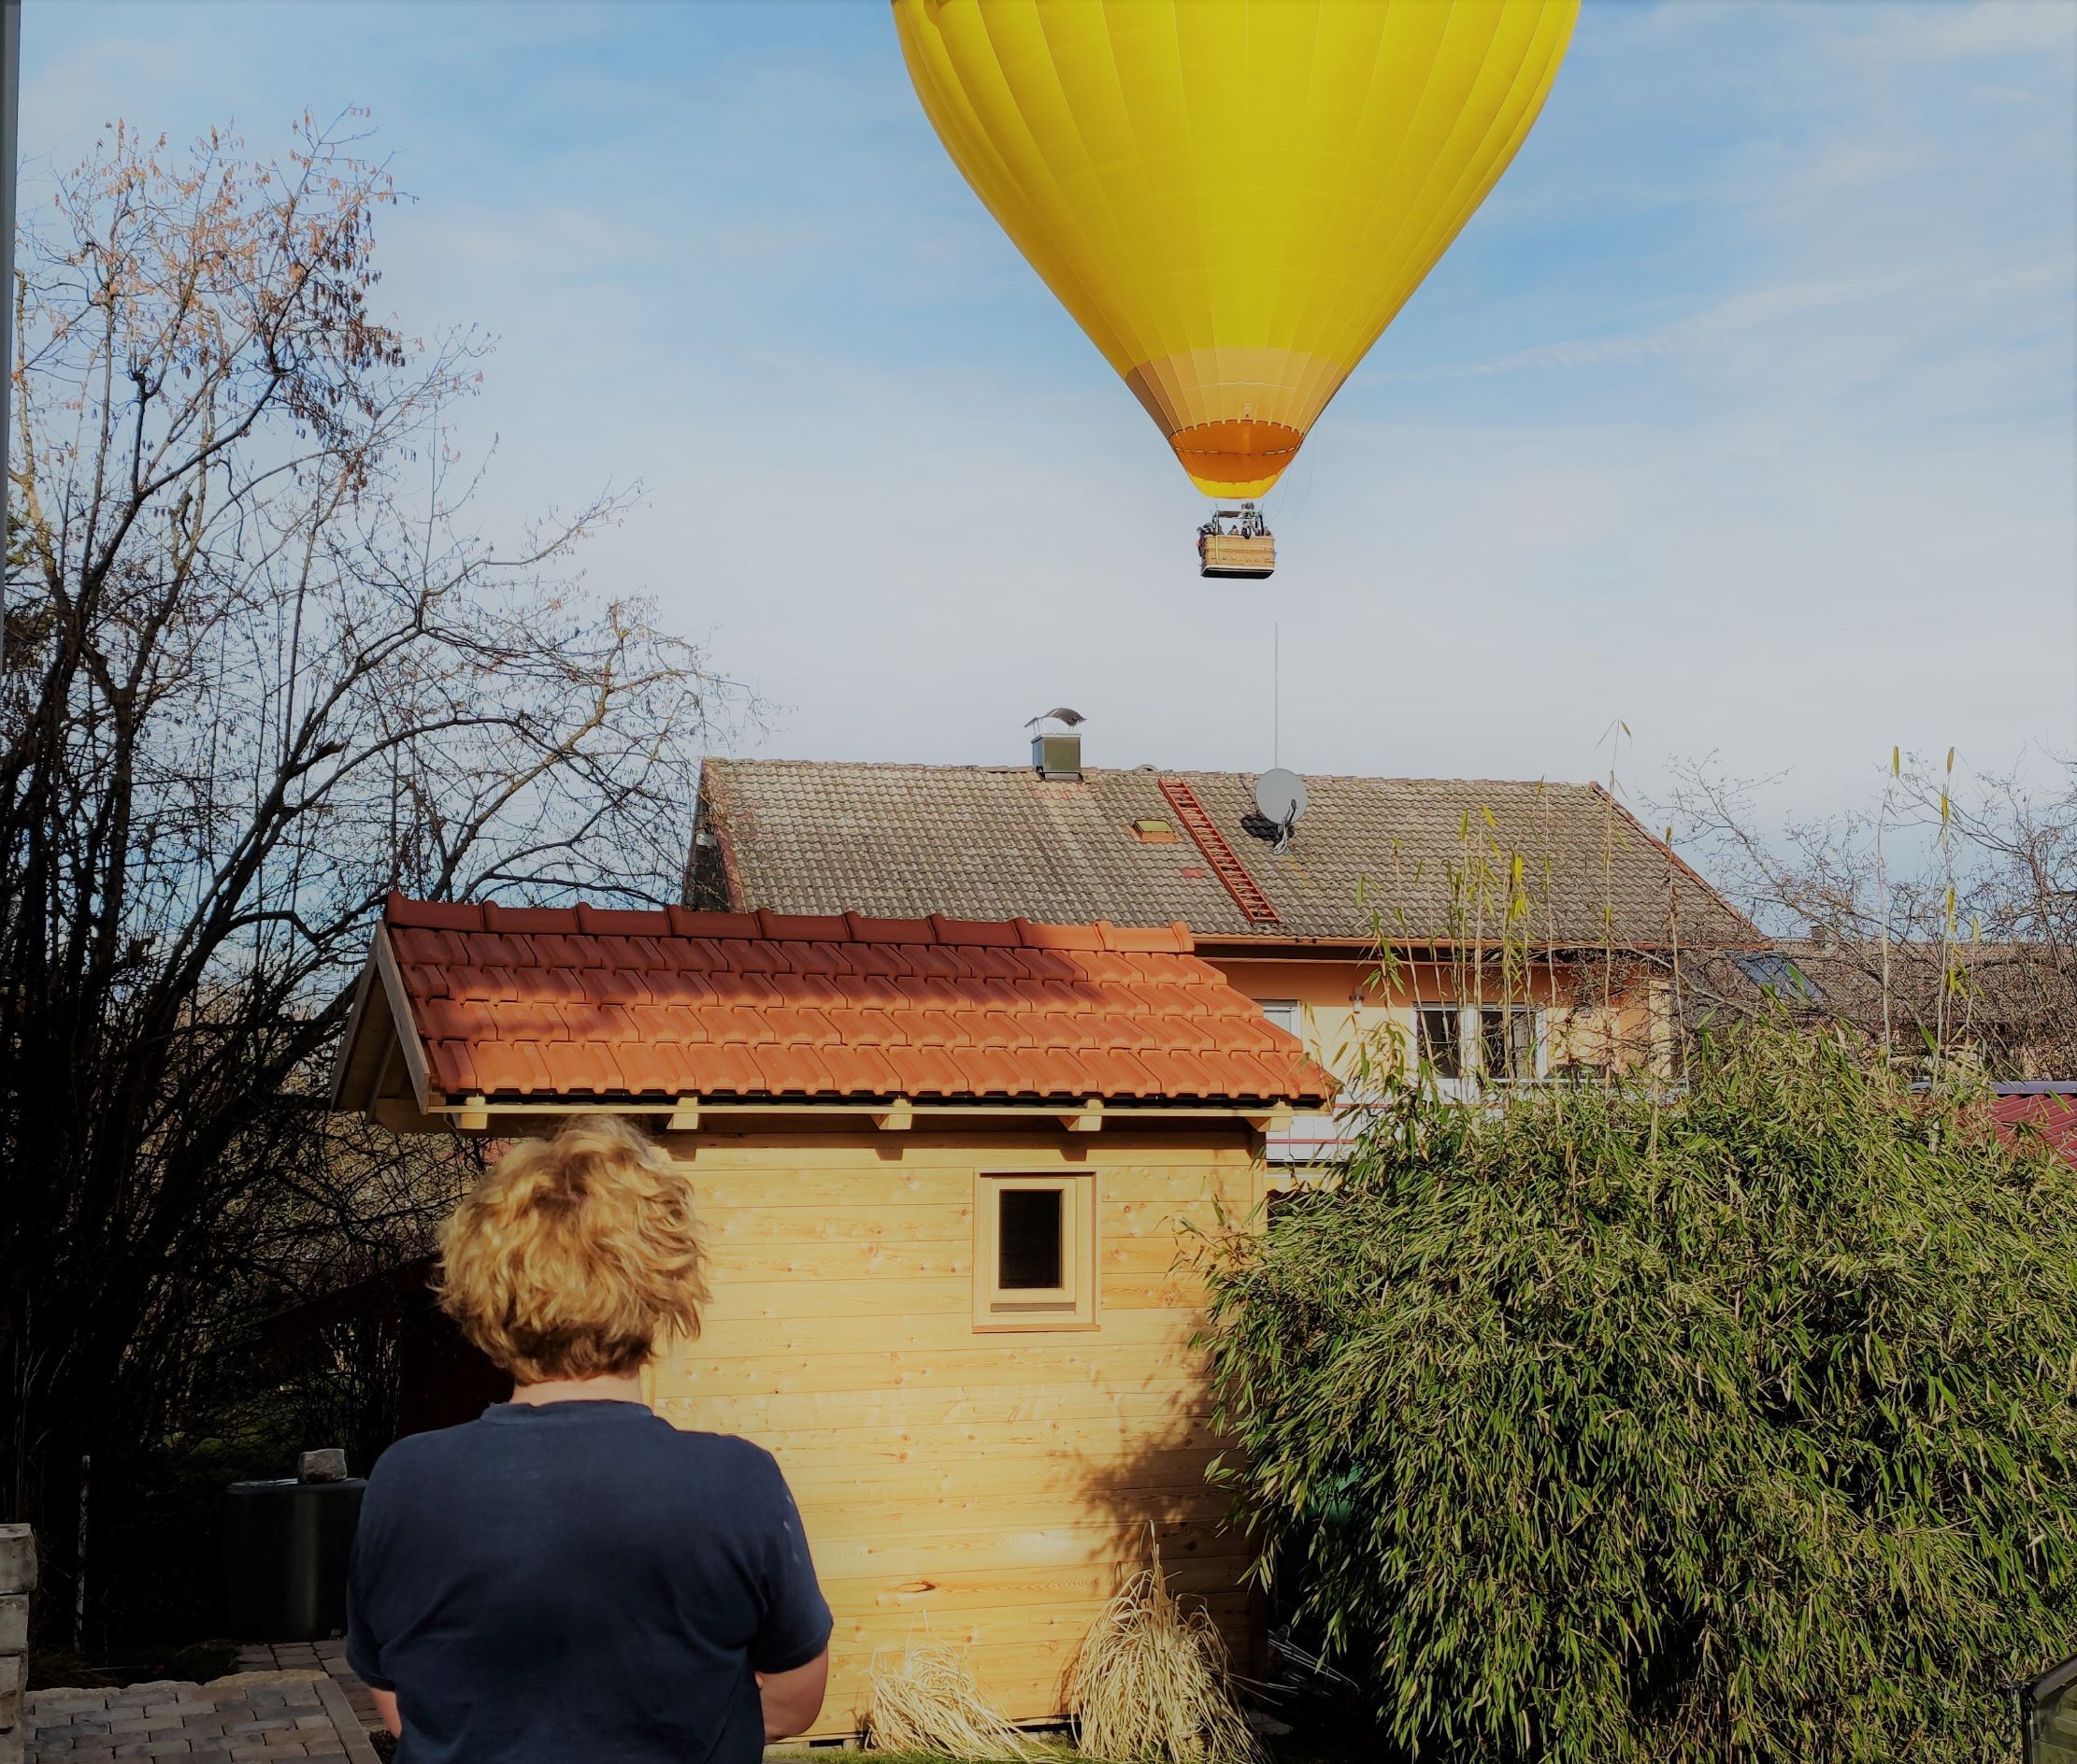 Gelber Heißluftballon knapp über Hausdach in Traunstein